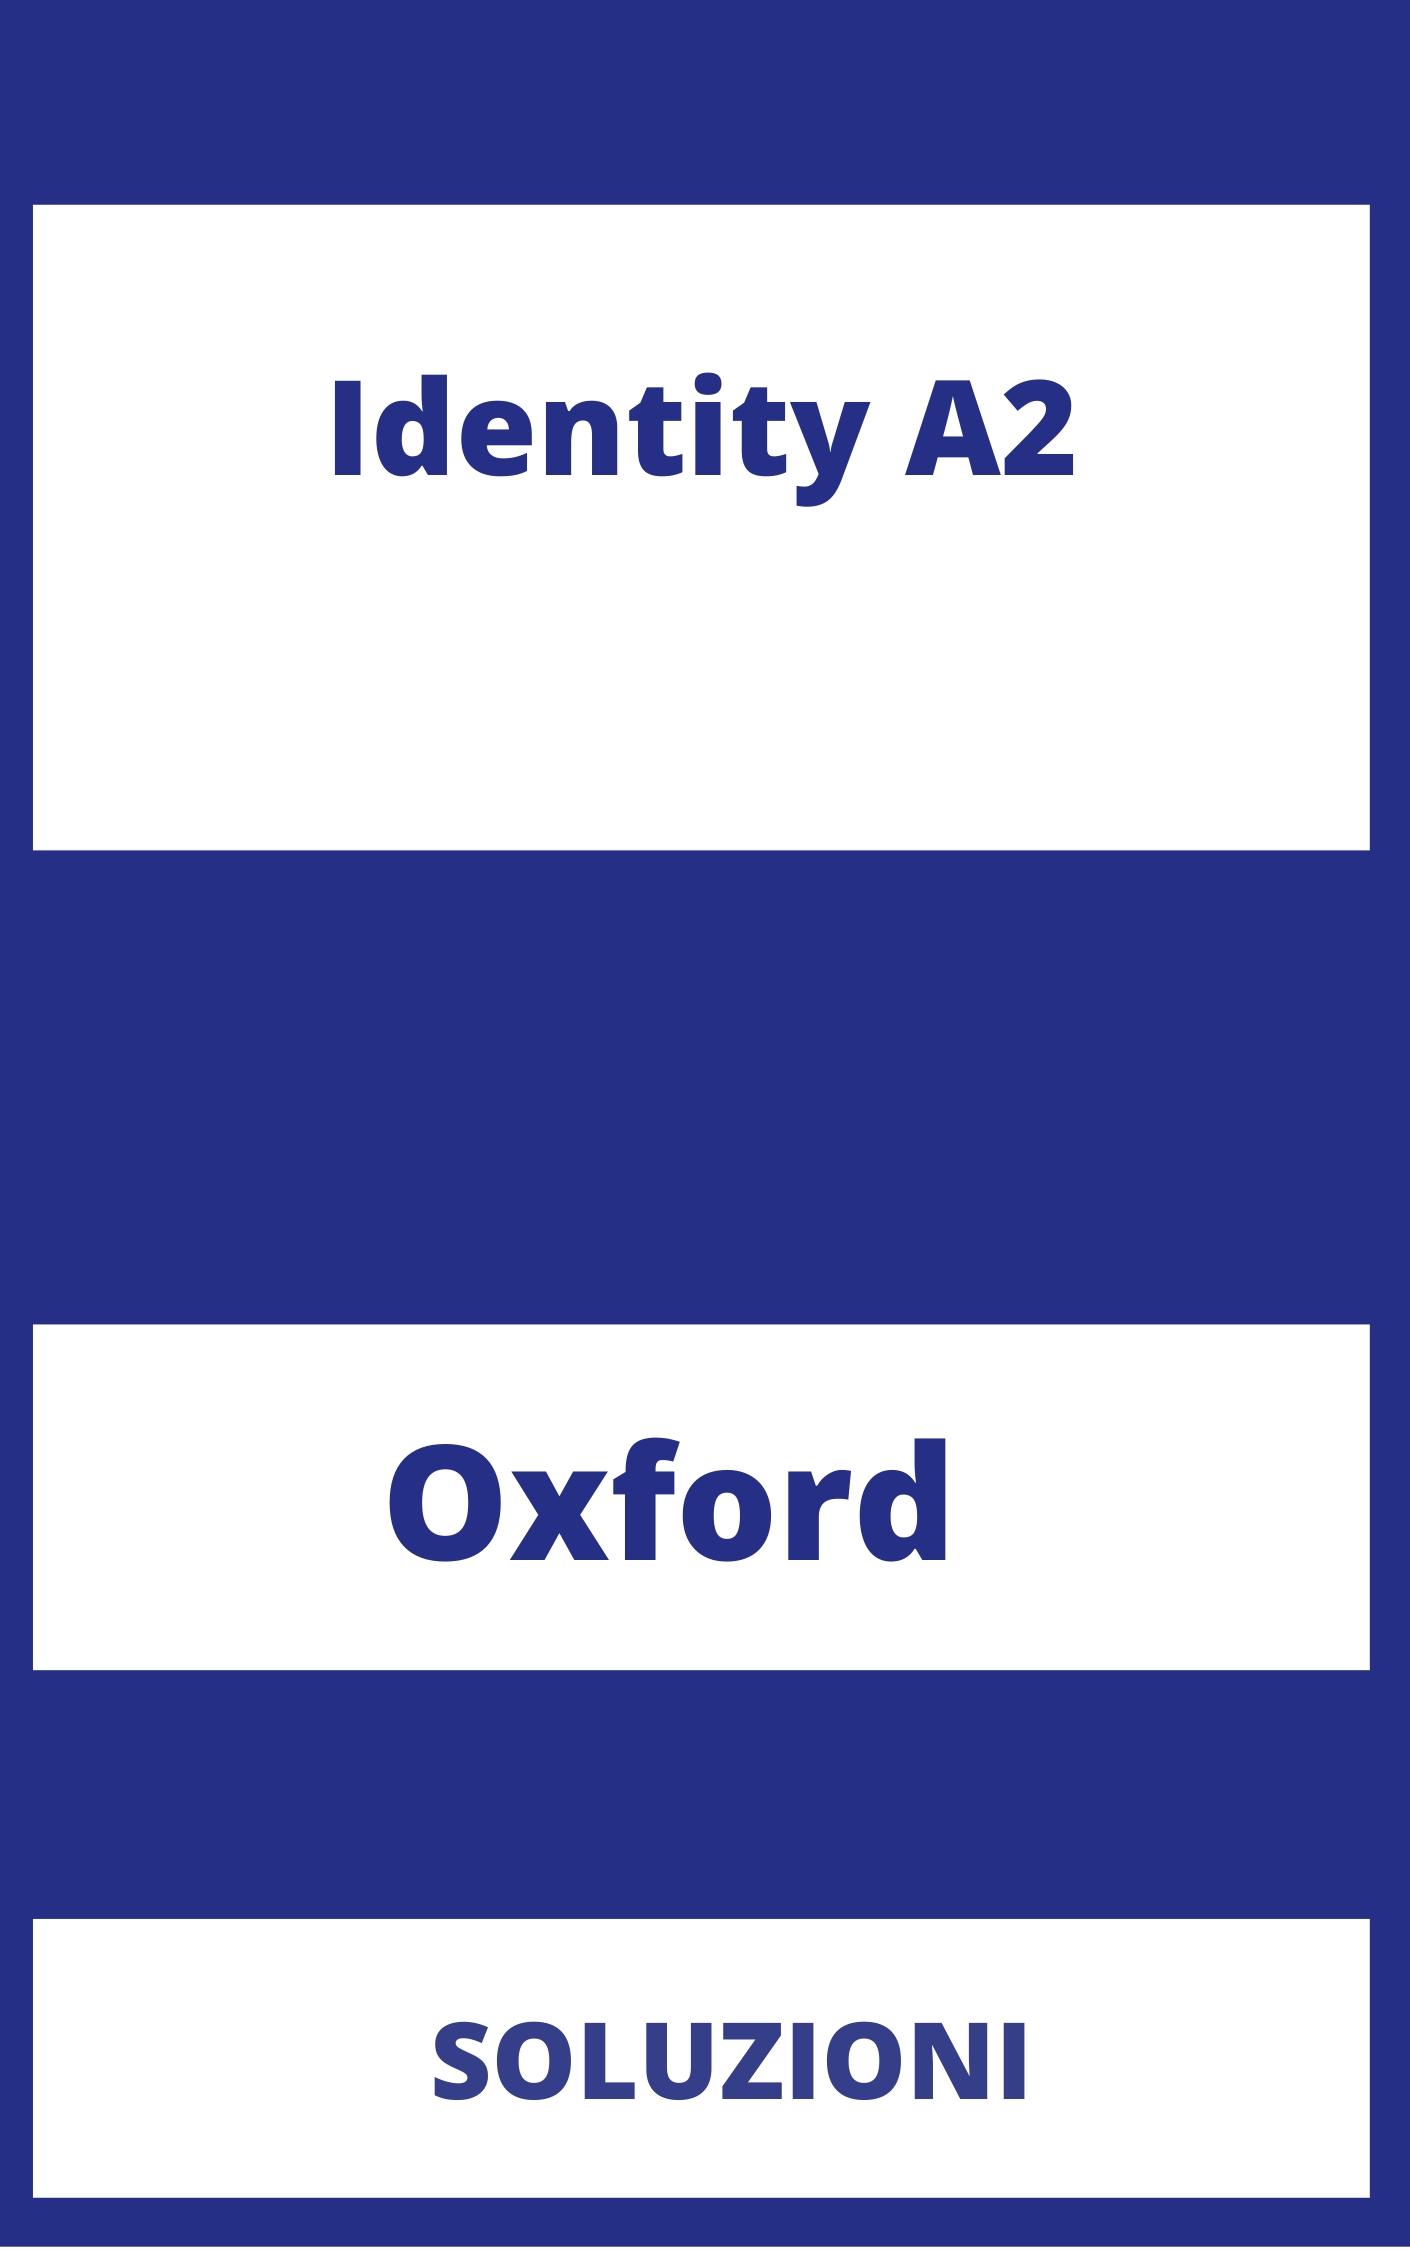 Identity A2 Soluzioni